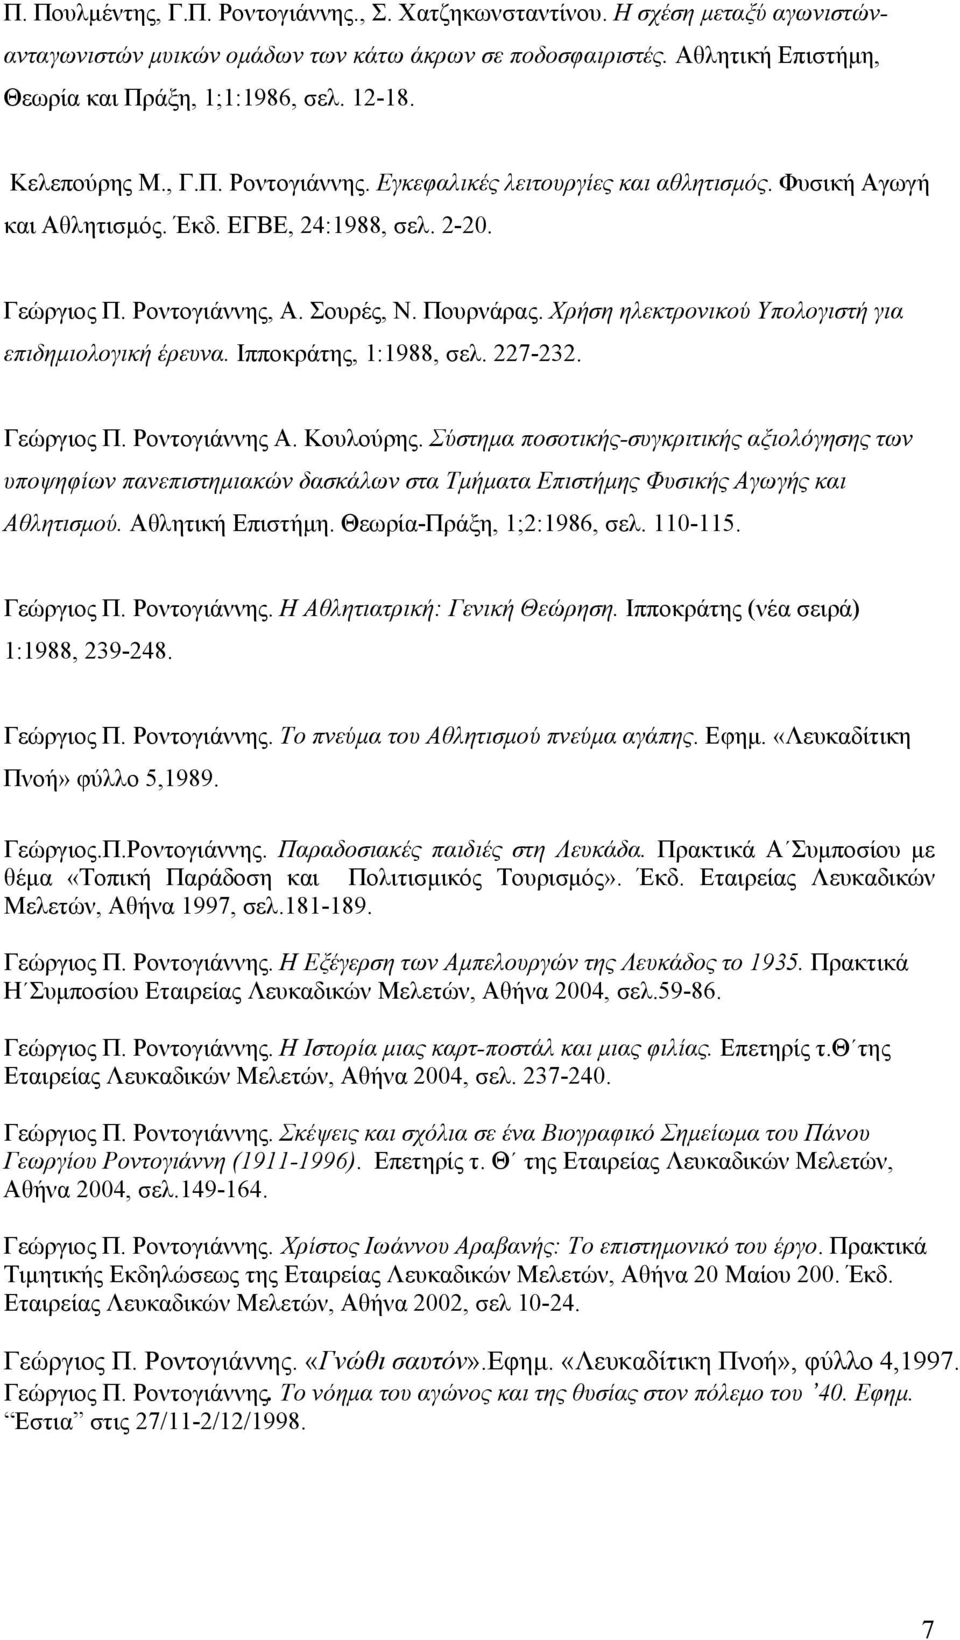 Χρήση ηλεκτρονικού Υπολογιστή για επιδημιολογική έρευνα. Ιπποκράτης, 1:1988, σελ. 227-232. Γεώργιος Π. Ροντογιάννης Α. Κουλούρης.